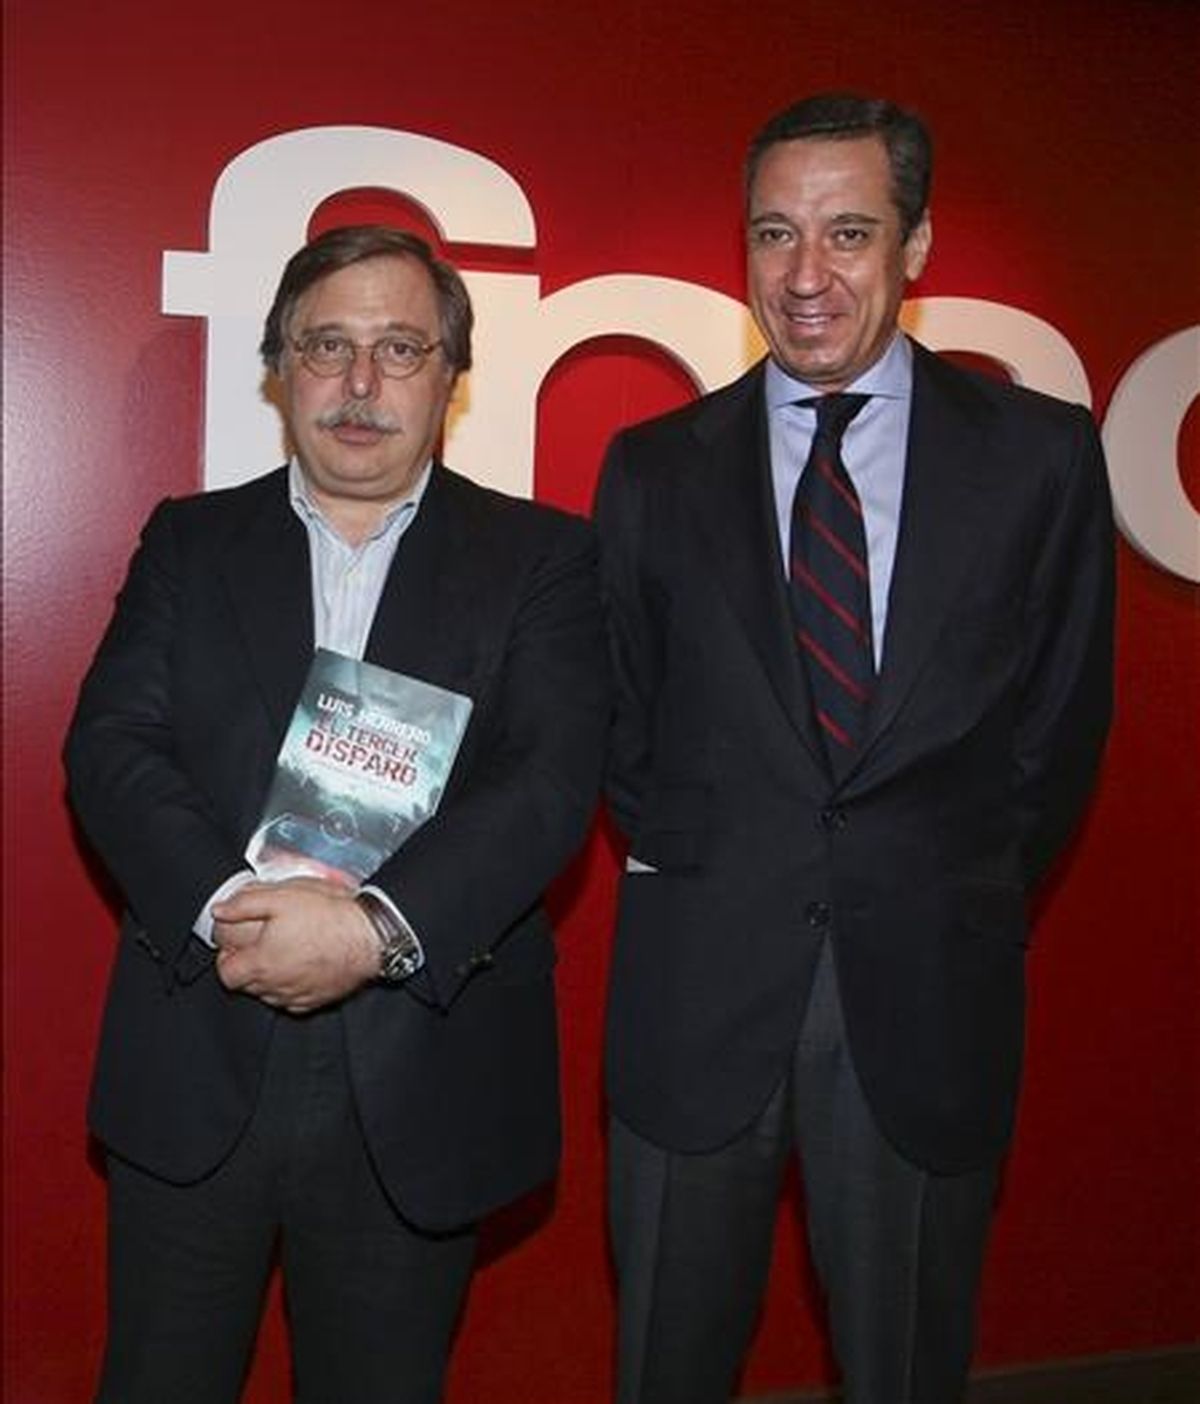 El eurodiputado del Partido Popular Luis Herrero,iz, acompañado por el ex portavoz parlamentario del PP Eduardo Zaplana,d, durante la presentación de su primera novela, "El tercer disparo". EFE